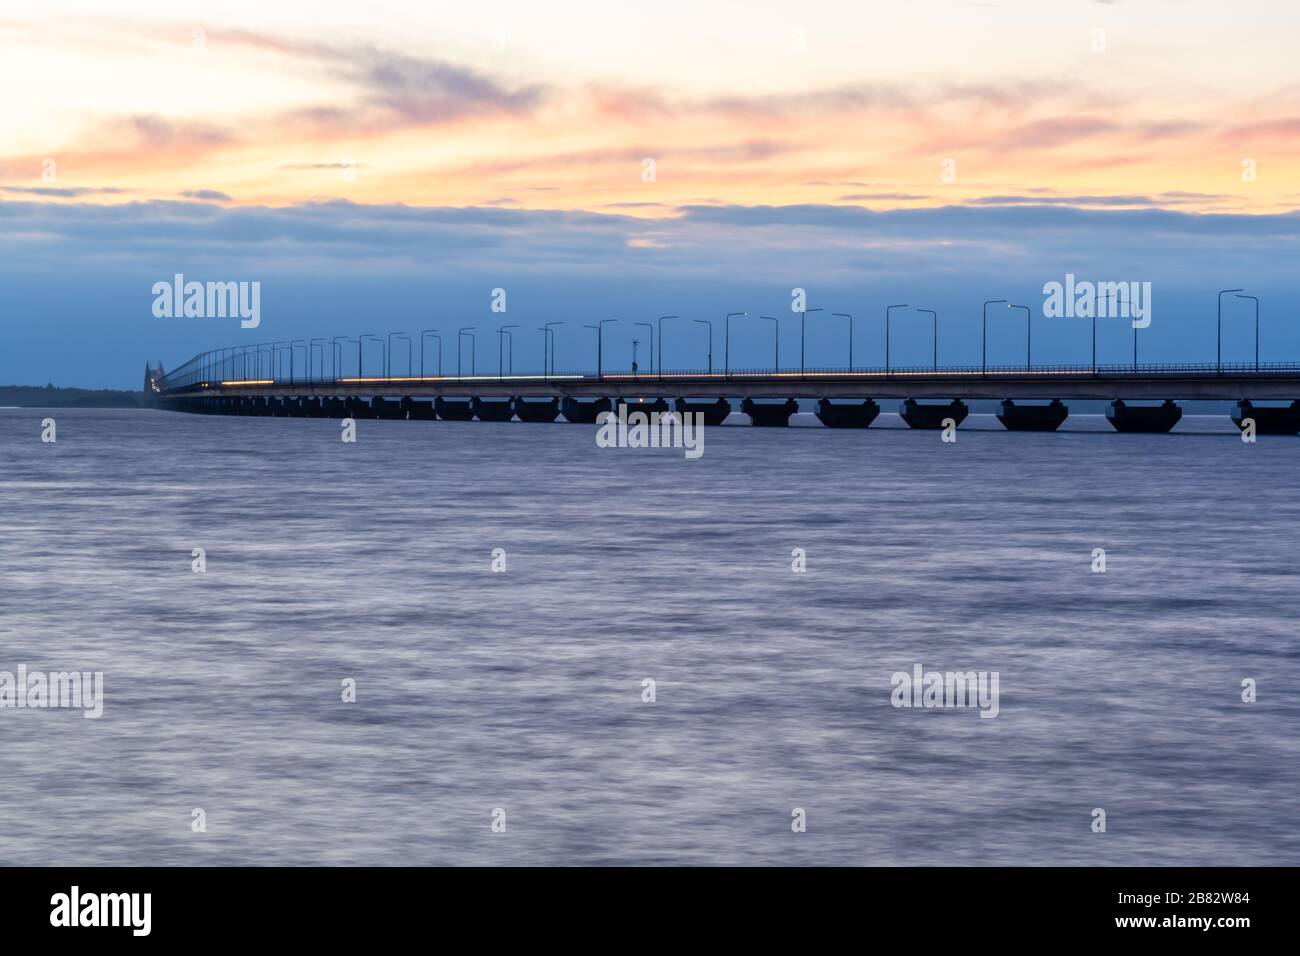 El puente Oland en el crepúsculo, el puente está conectando la isla Oland con el territorio continental de Suecia Foto de stock